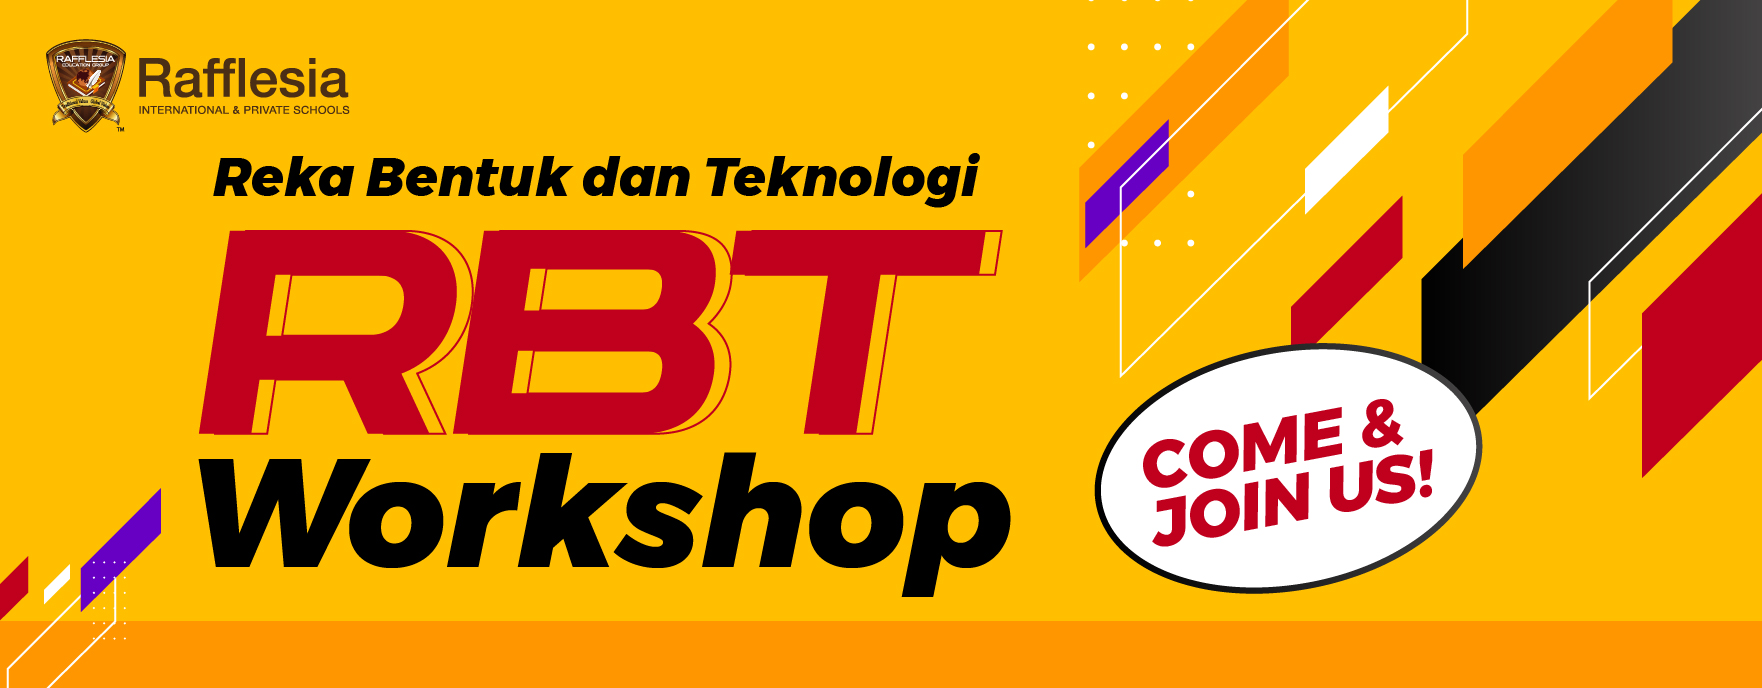 Reka Bentuk dan Teknologi (RBT) Workshop